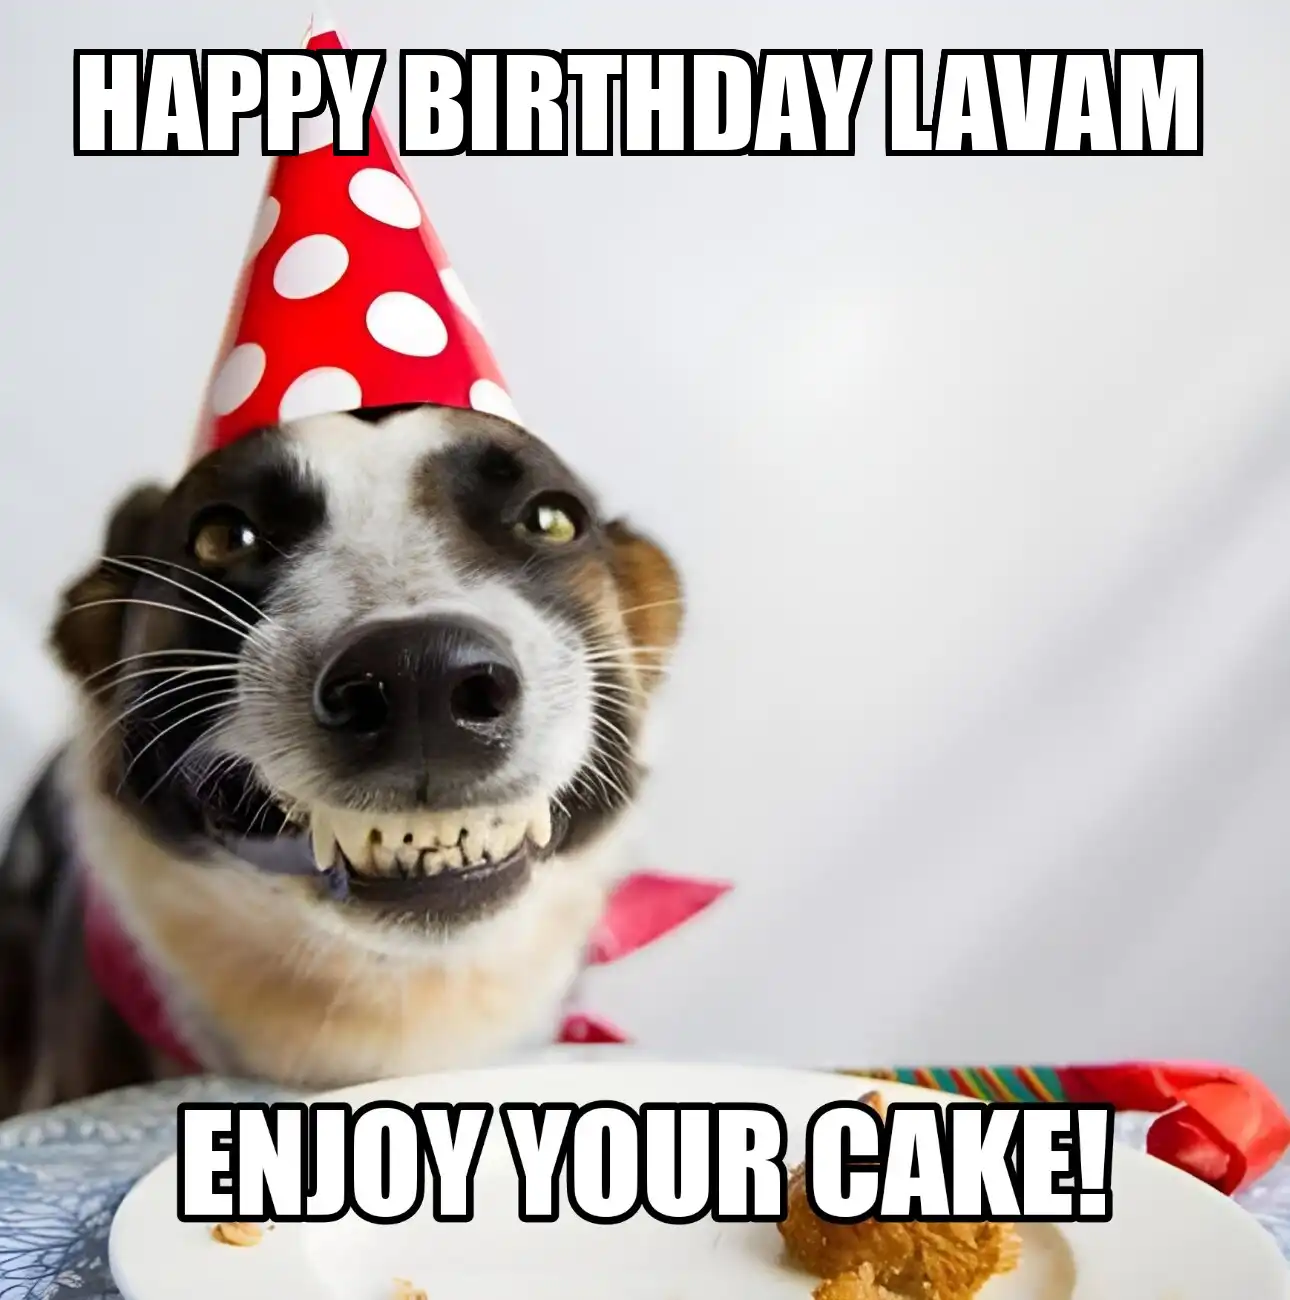 Happy Birthday Lavam Enjoy Your Cake Dog Meme